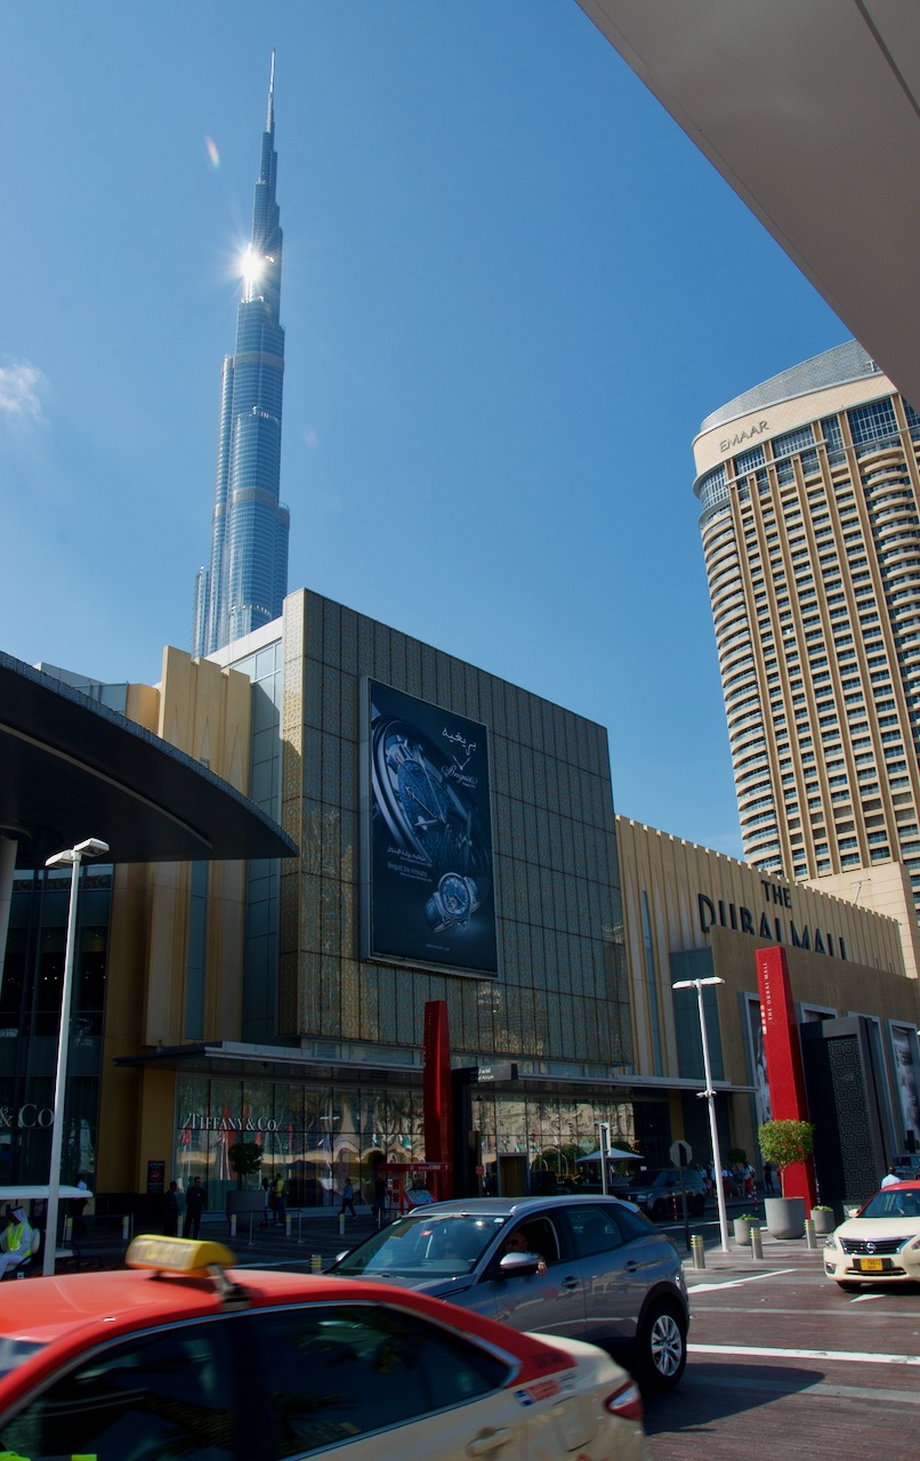 Burj Khalifa połączona jest z największym centrum handlowym świata - The Dubai Mall